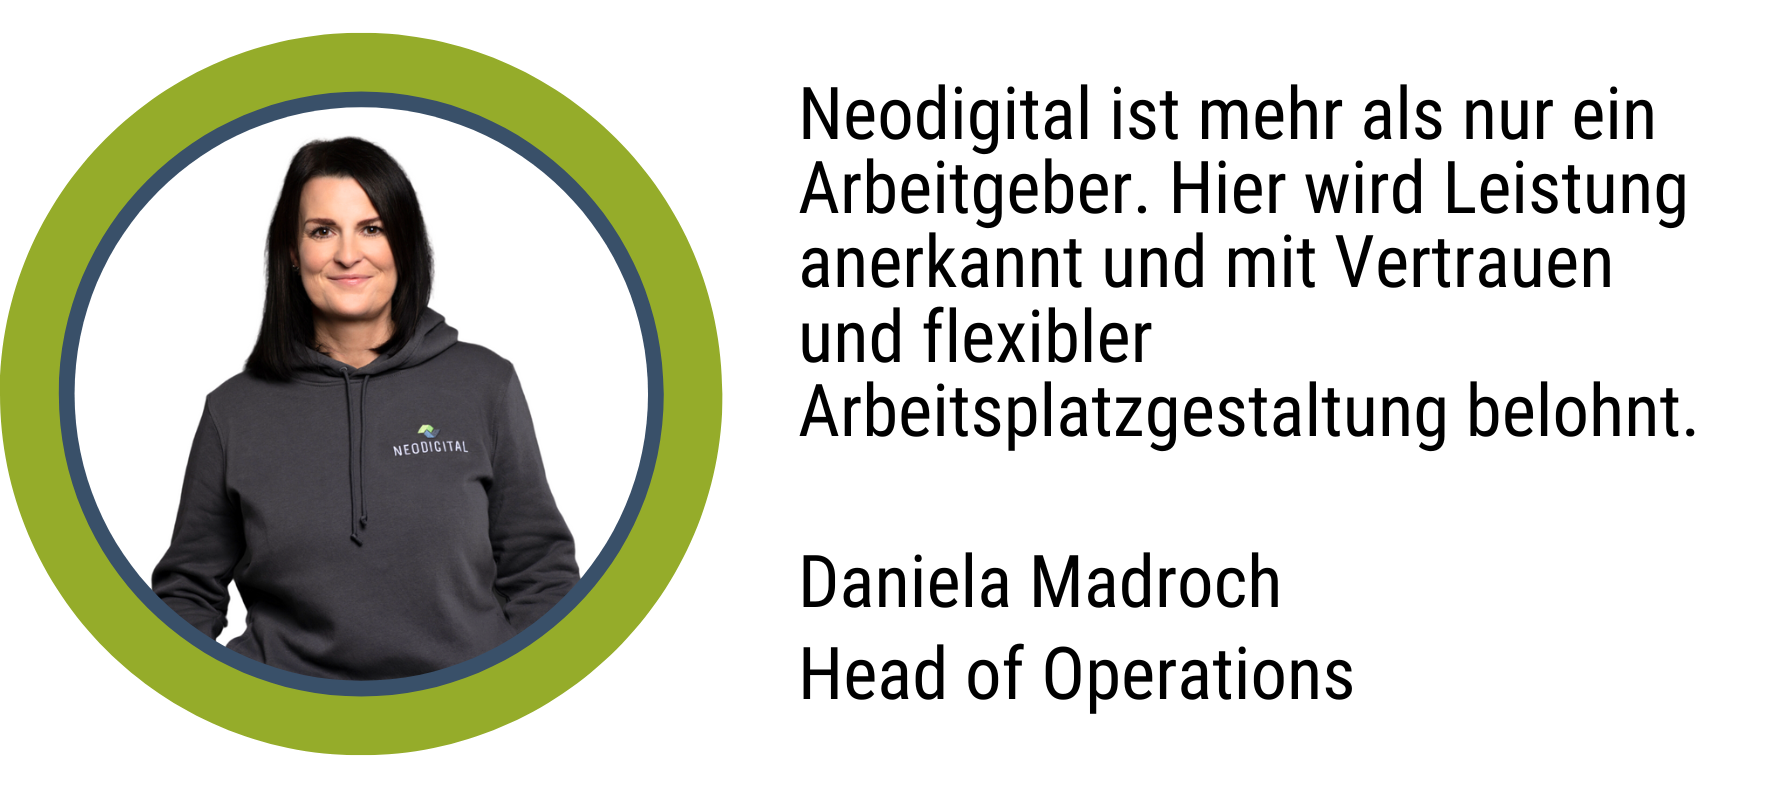 Zitat Daniela Madroch, Team Leader Operations: Neodigital ist mehr als nur ein Arbeitgeber. Hier wird Leistung anerkannt und mit Vertrauen und flexibler Arbeitsplatzgestaltung belohnt.